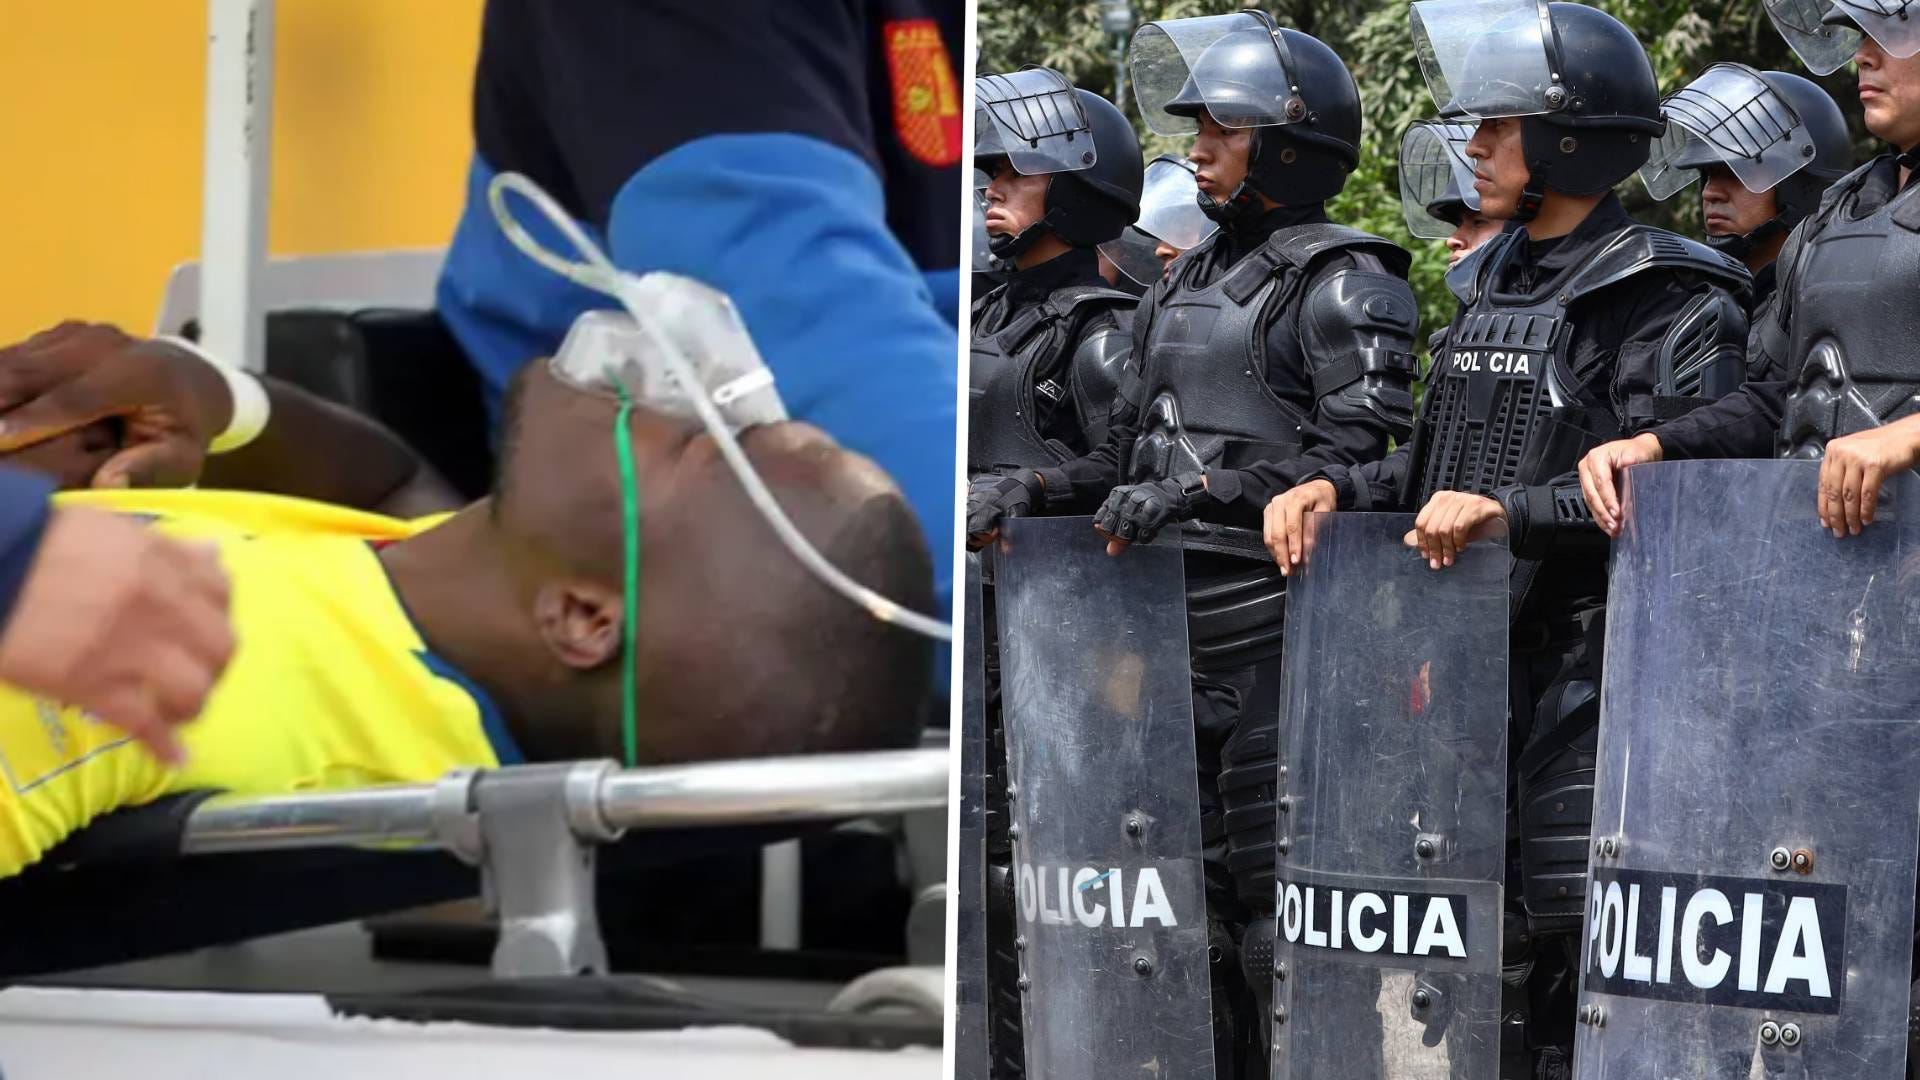 WK 2022: De Ecuadoriaanse ster Ener Valencia deed alsof hij gewond was om aan de politie te ontsnappen